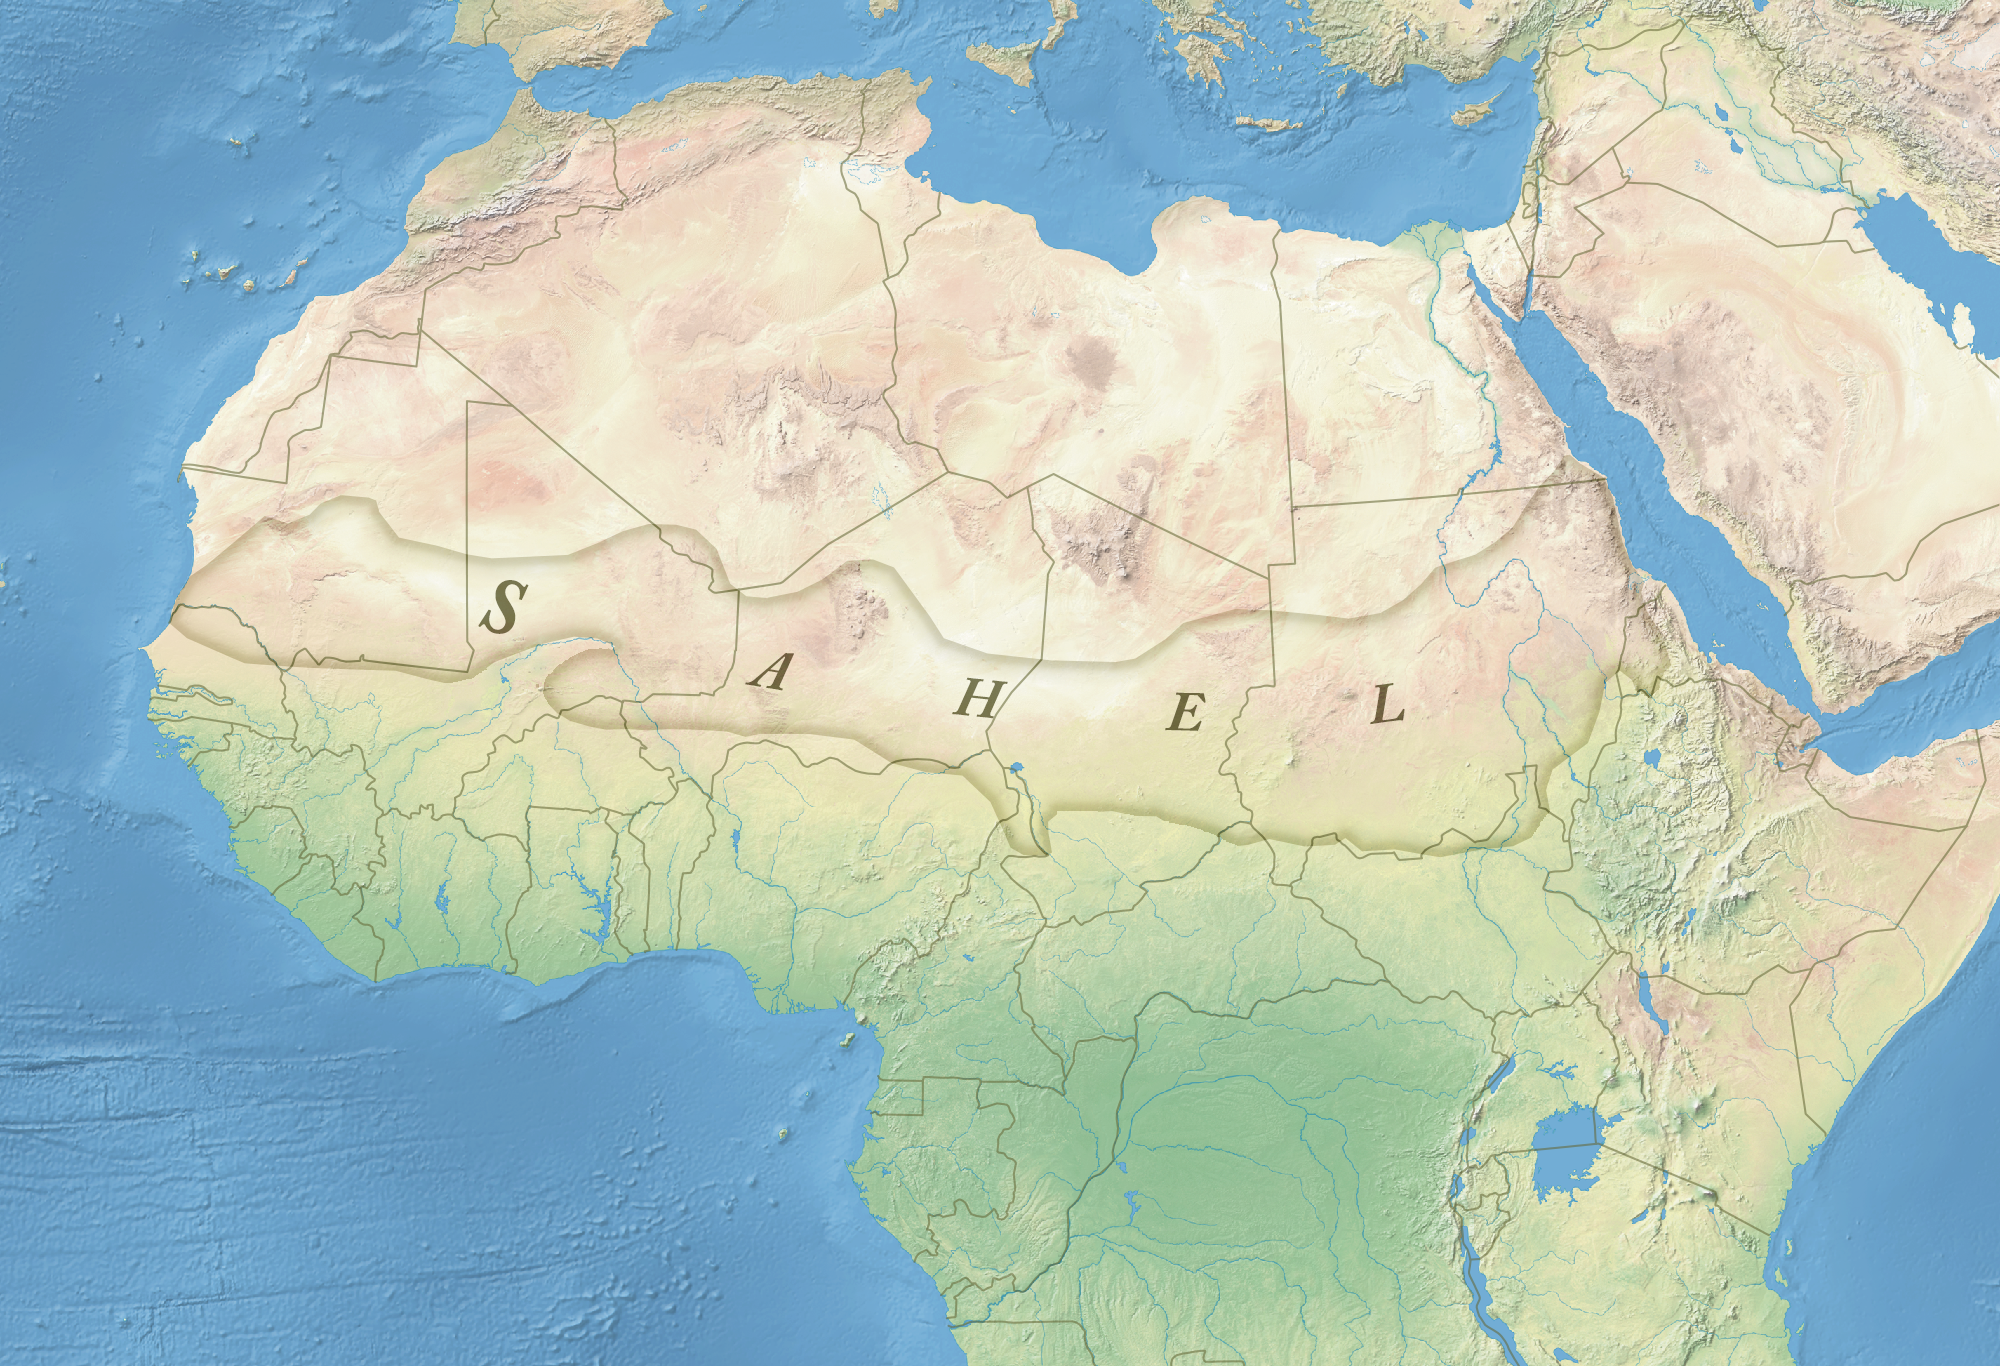 Kart som viser at Sahel regionen befinner seg i den nordlige delen av Afrika og går på tvers mellom øst og vest.